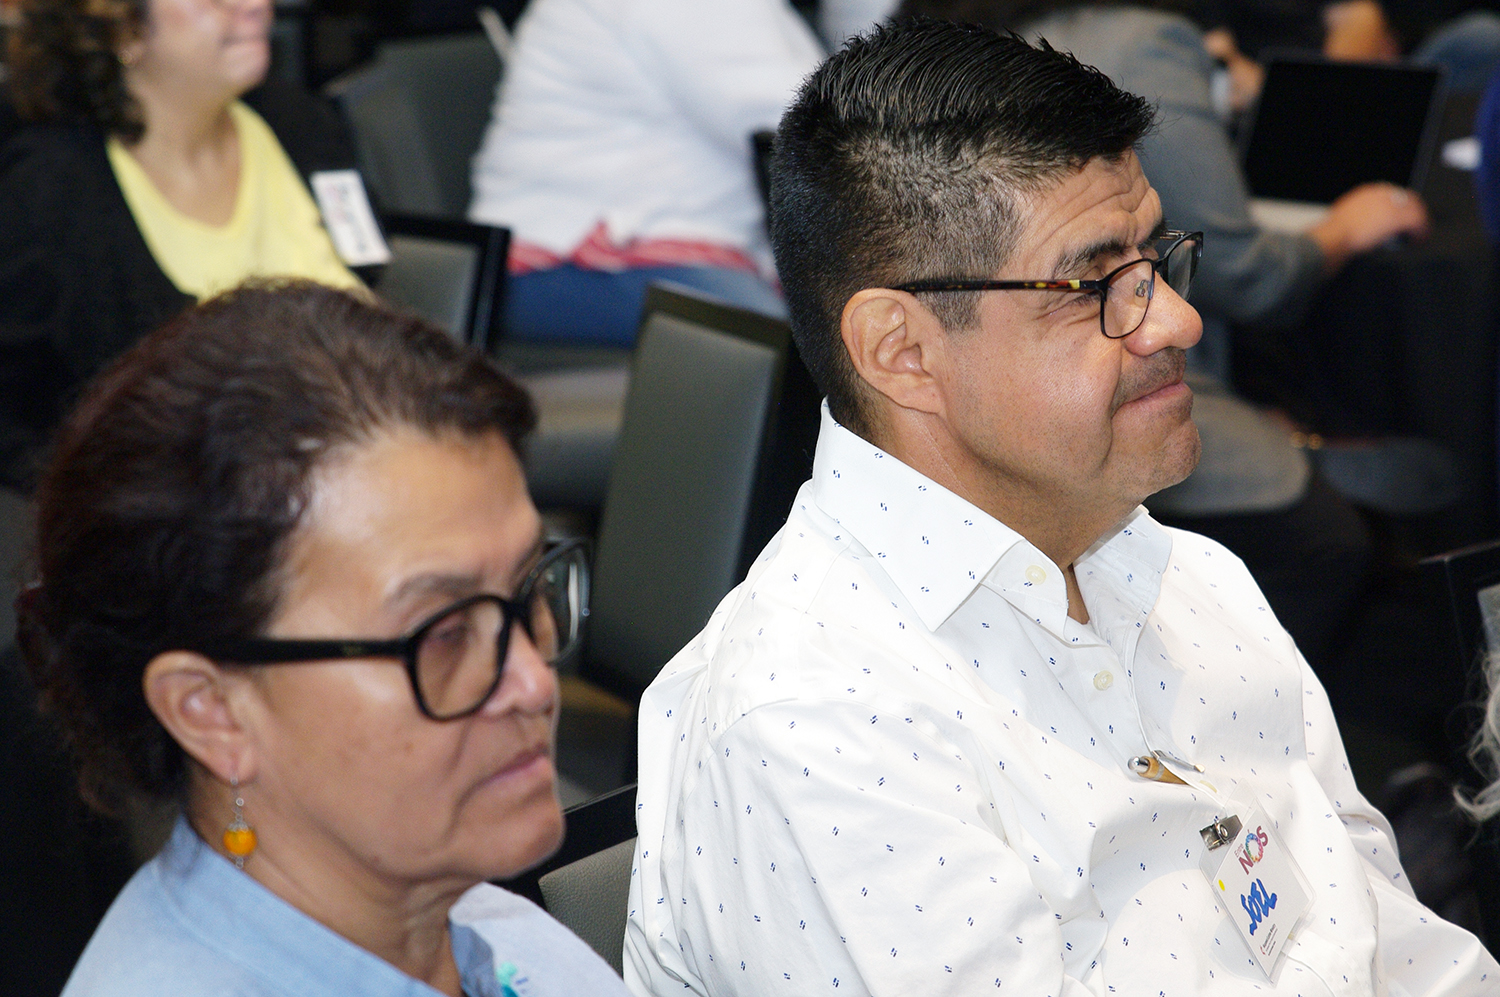 La Pastora Antonia “Toña” Ríos a la izquierda y el Rev. Joel Hortiales a la derecha de la imagen, sirven a la comunidad hispano-latina de la Conferencia Anual California-Pacífico.